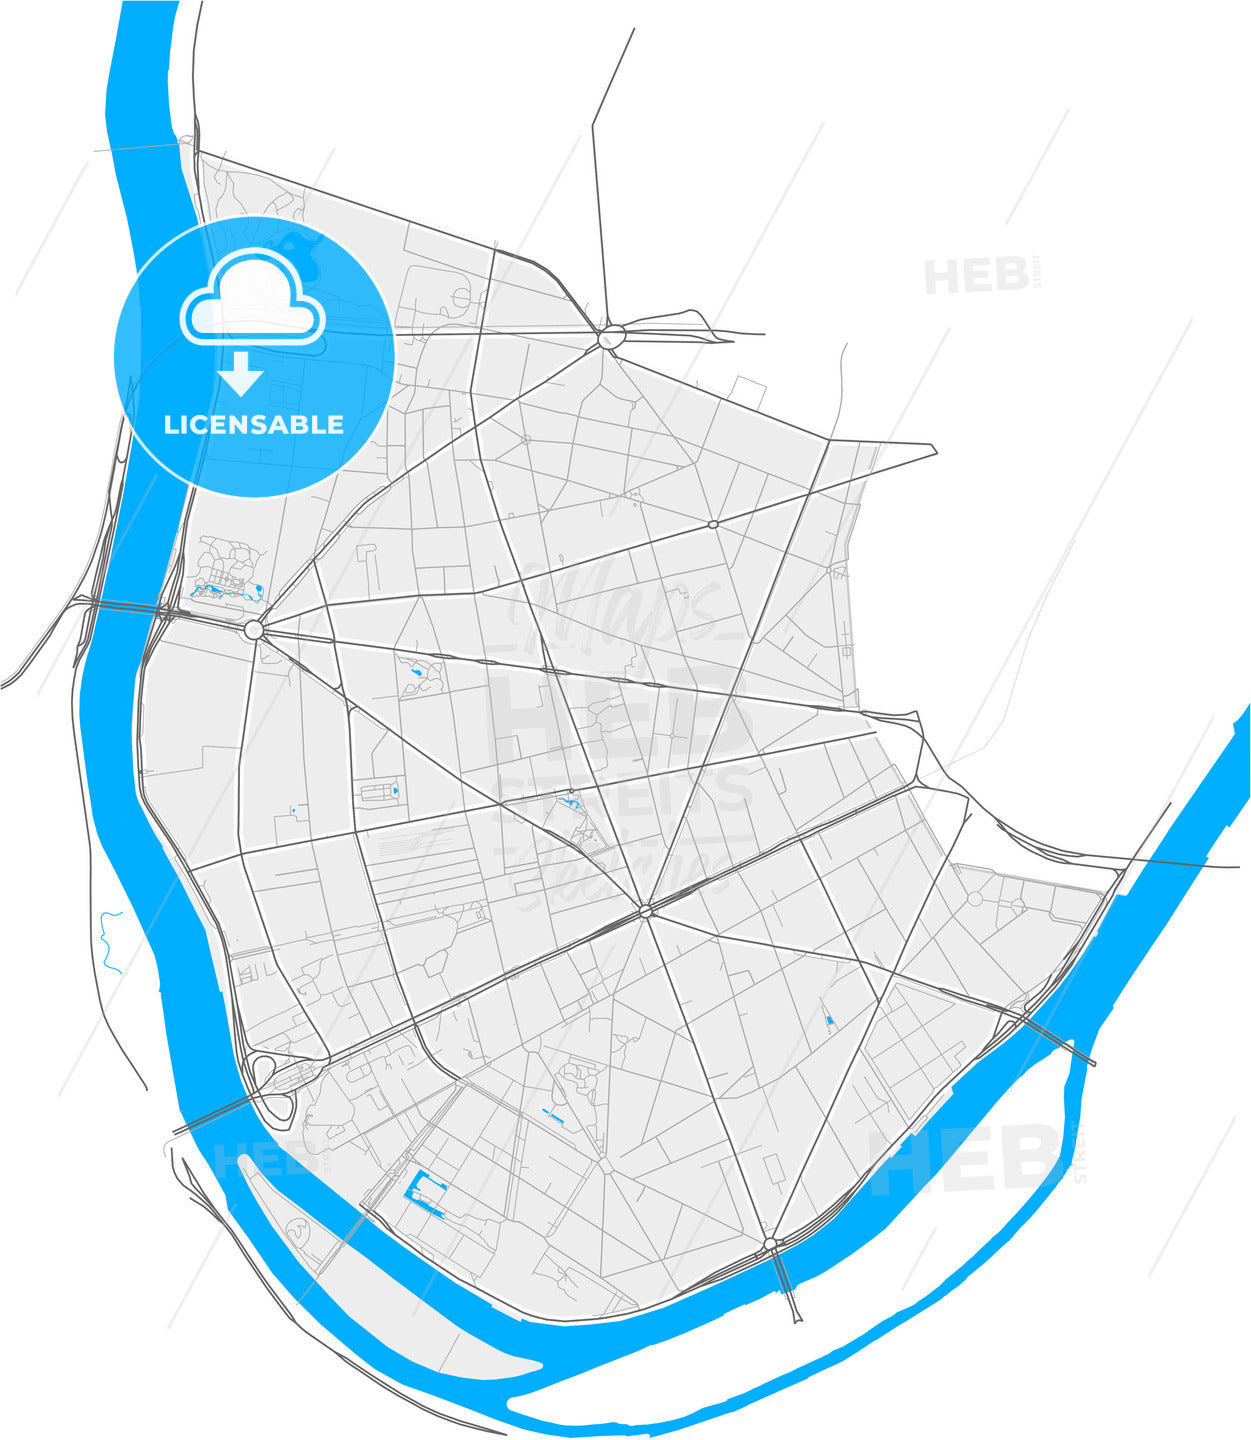 Boulogne-Billancourt, Hauts-de-Seine, France, high quality vector map